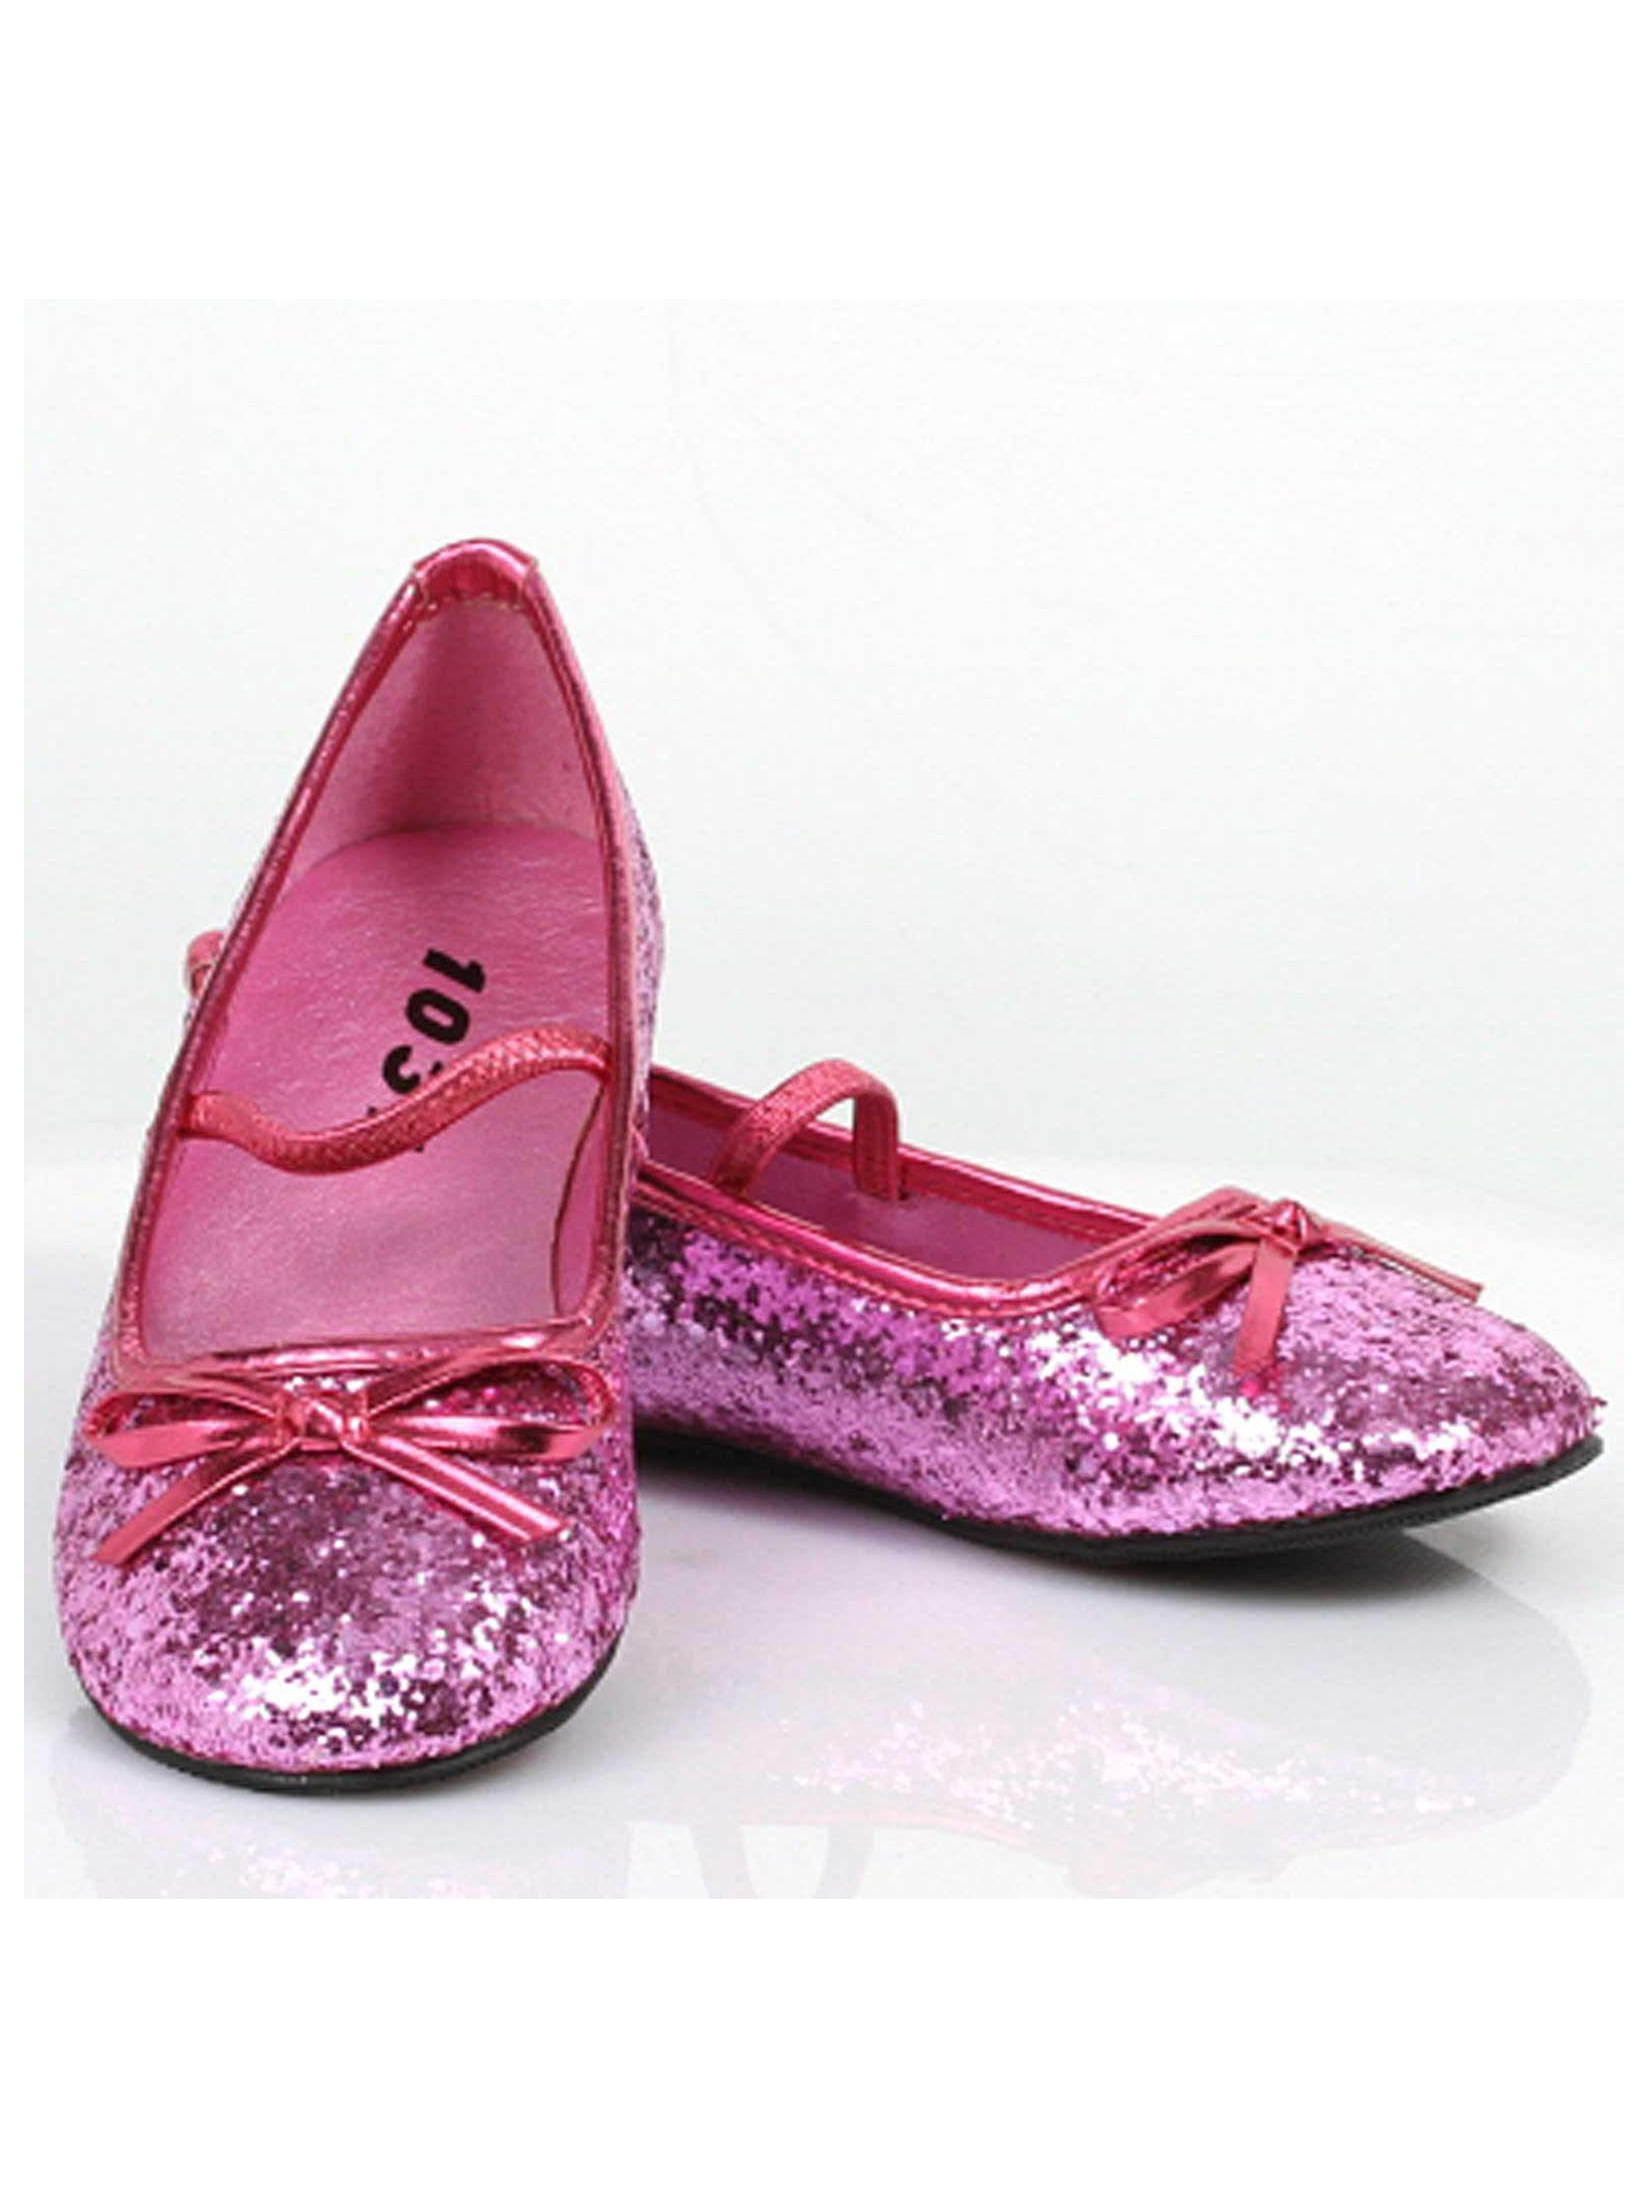 ELLIE SHOES - Sparkle Ballerina (Pink 